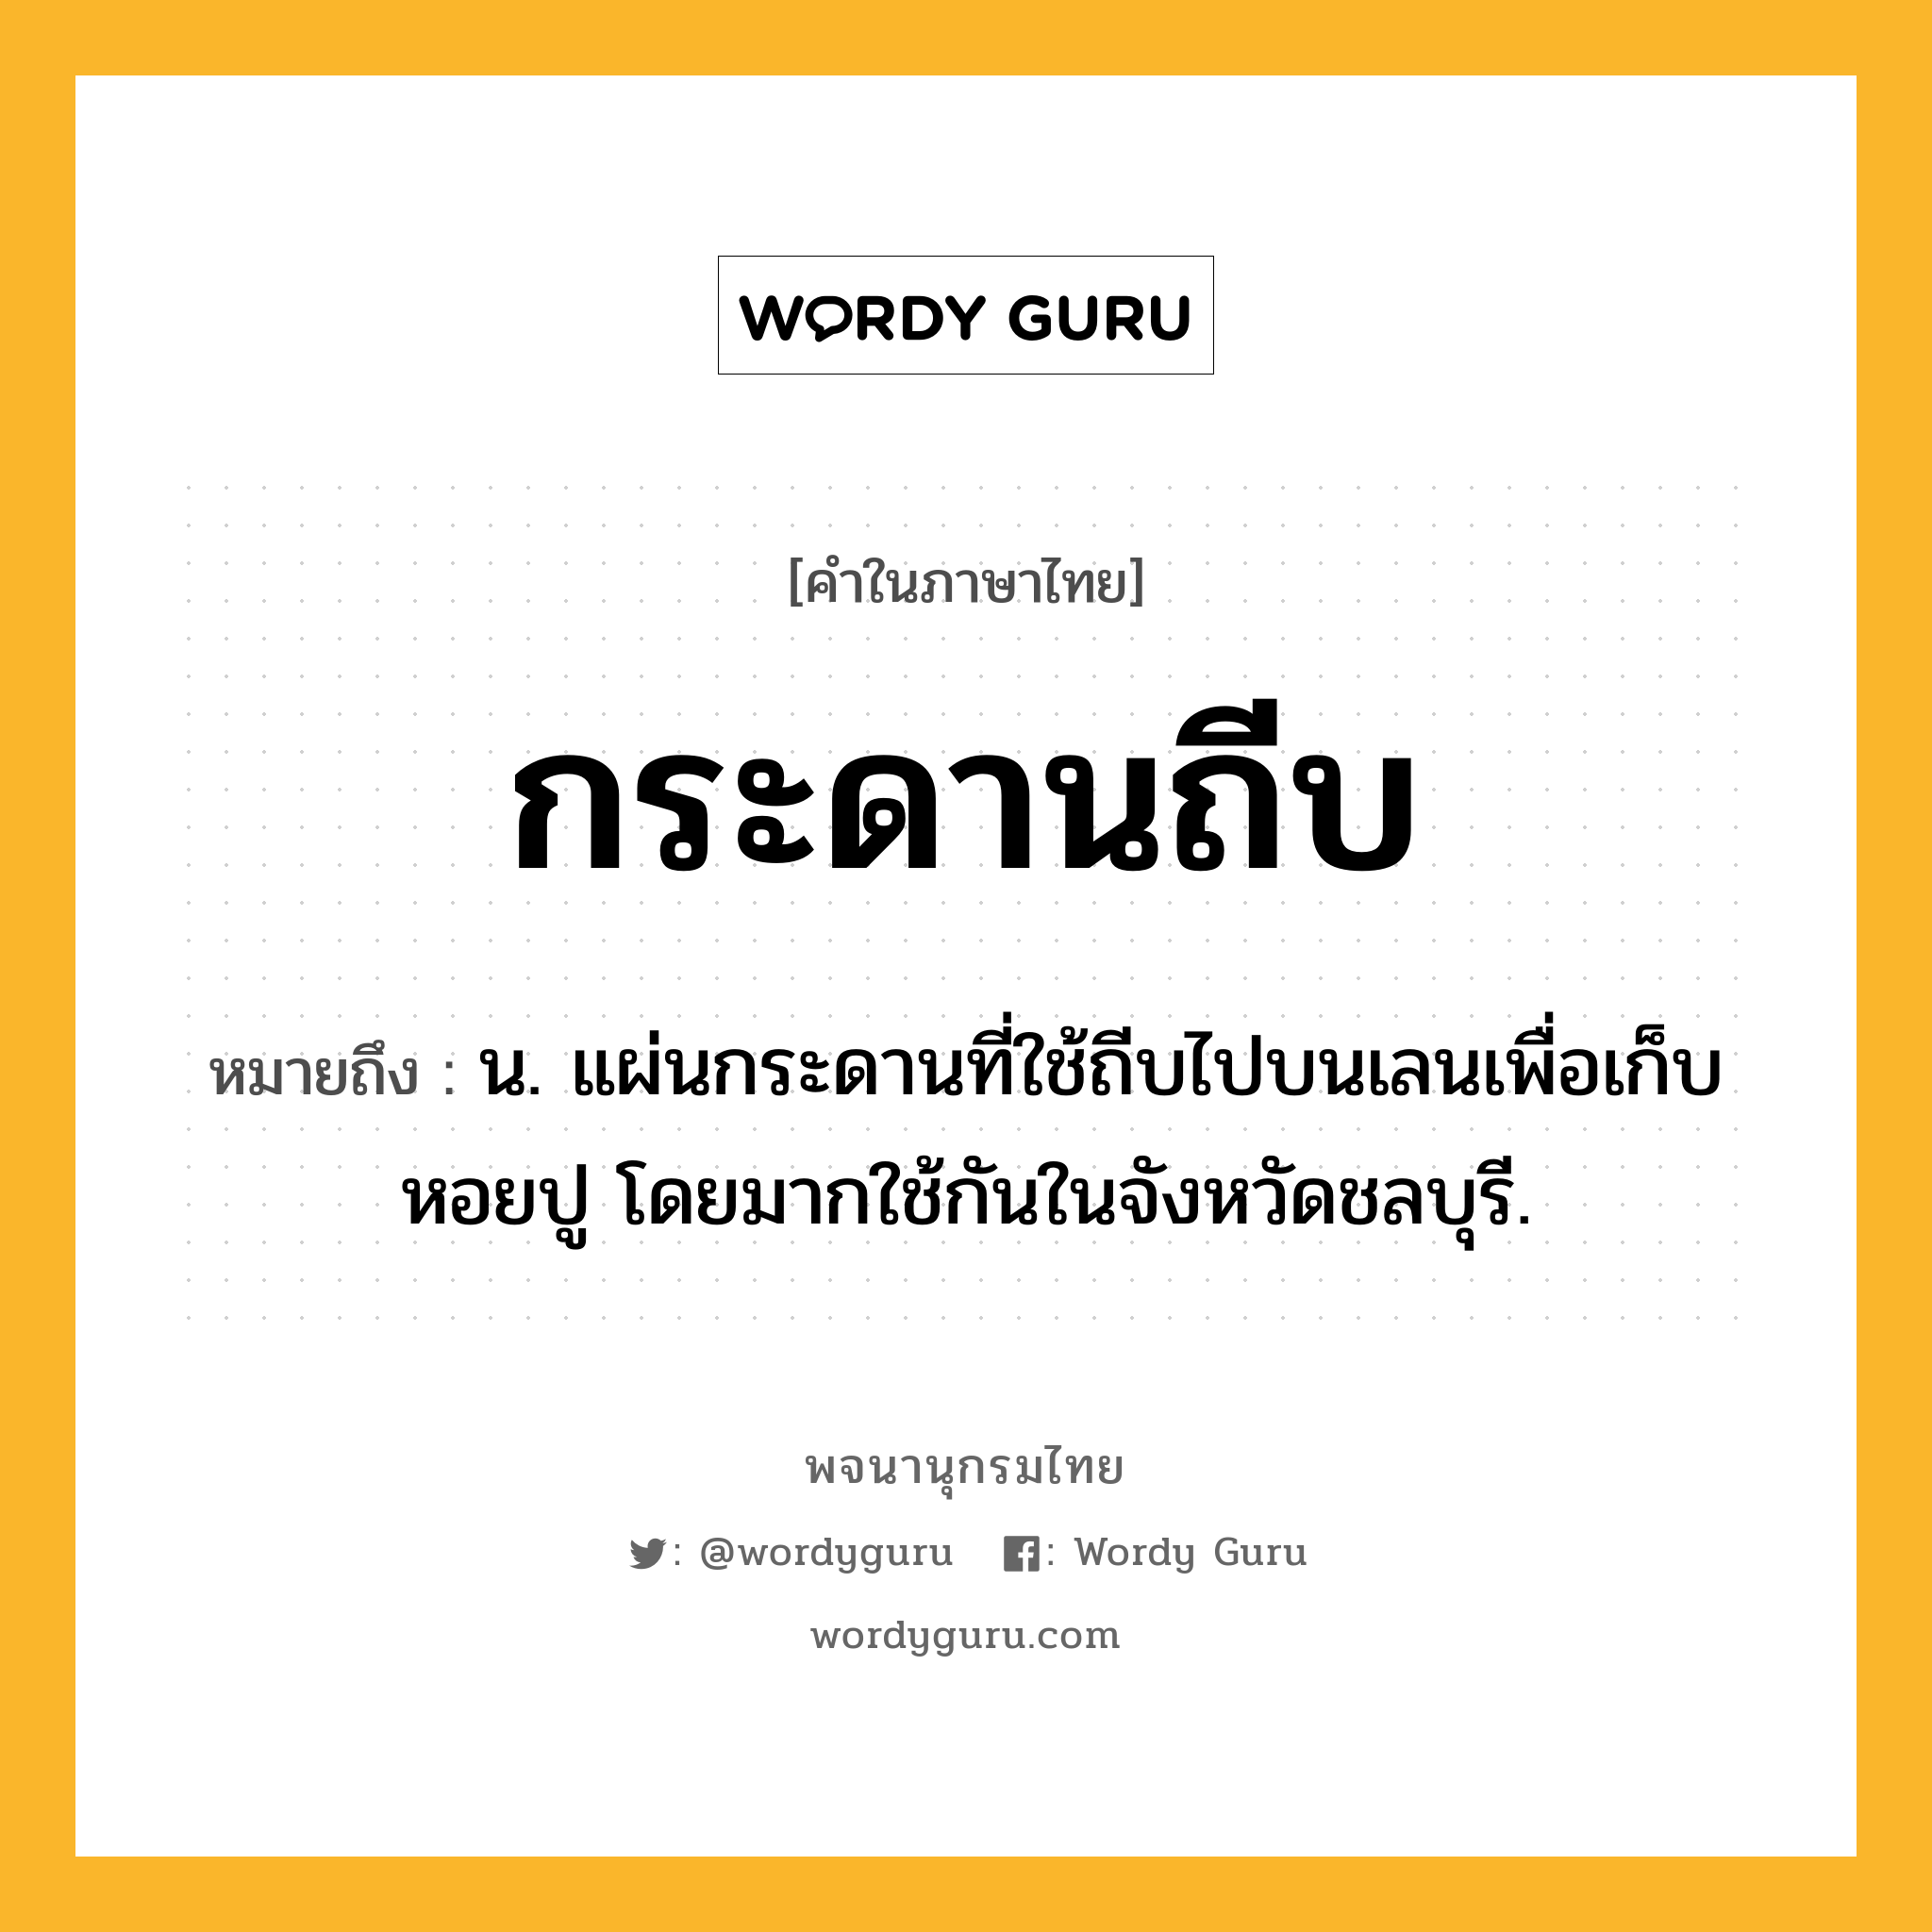 กระดานถีบ หมายถึงอะไร?, คำในภาษาไทย กระดานถีบ หมายถึง น. แผ่นกระดานที่ใช้ถีบไปบนเลนเพื่อเก็บหอยปู โดยมากใช้กันในจังหวัดชลบุรี.